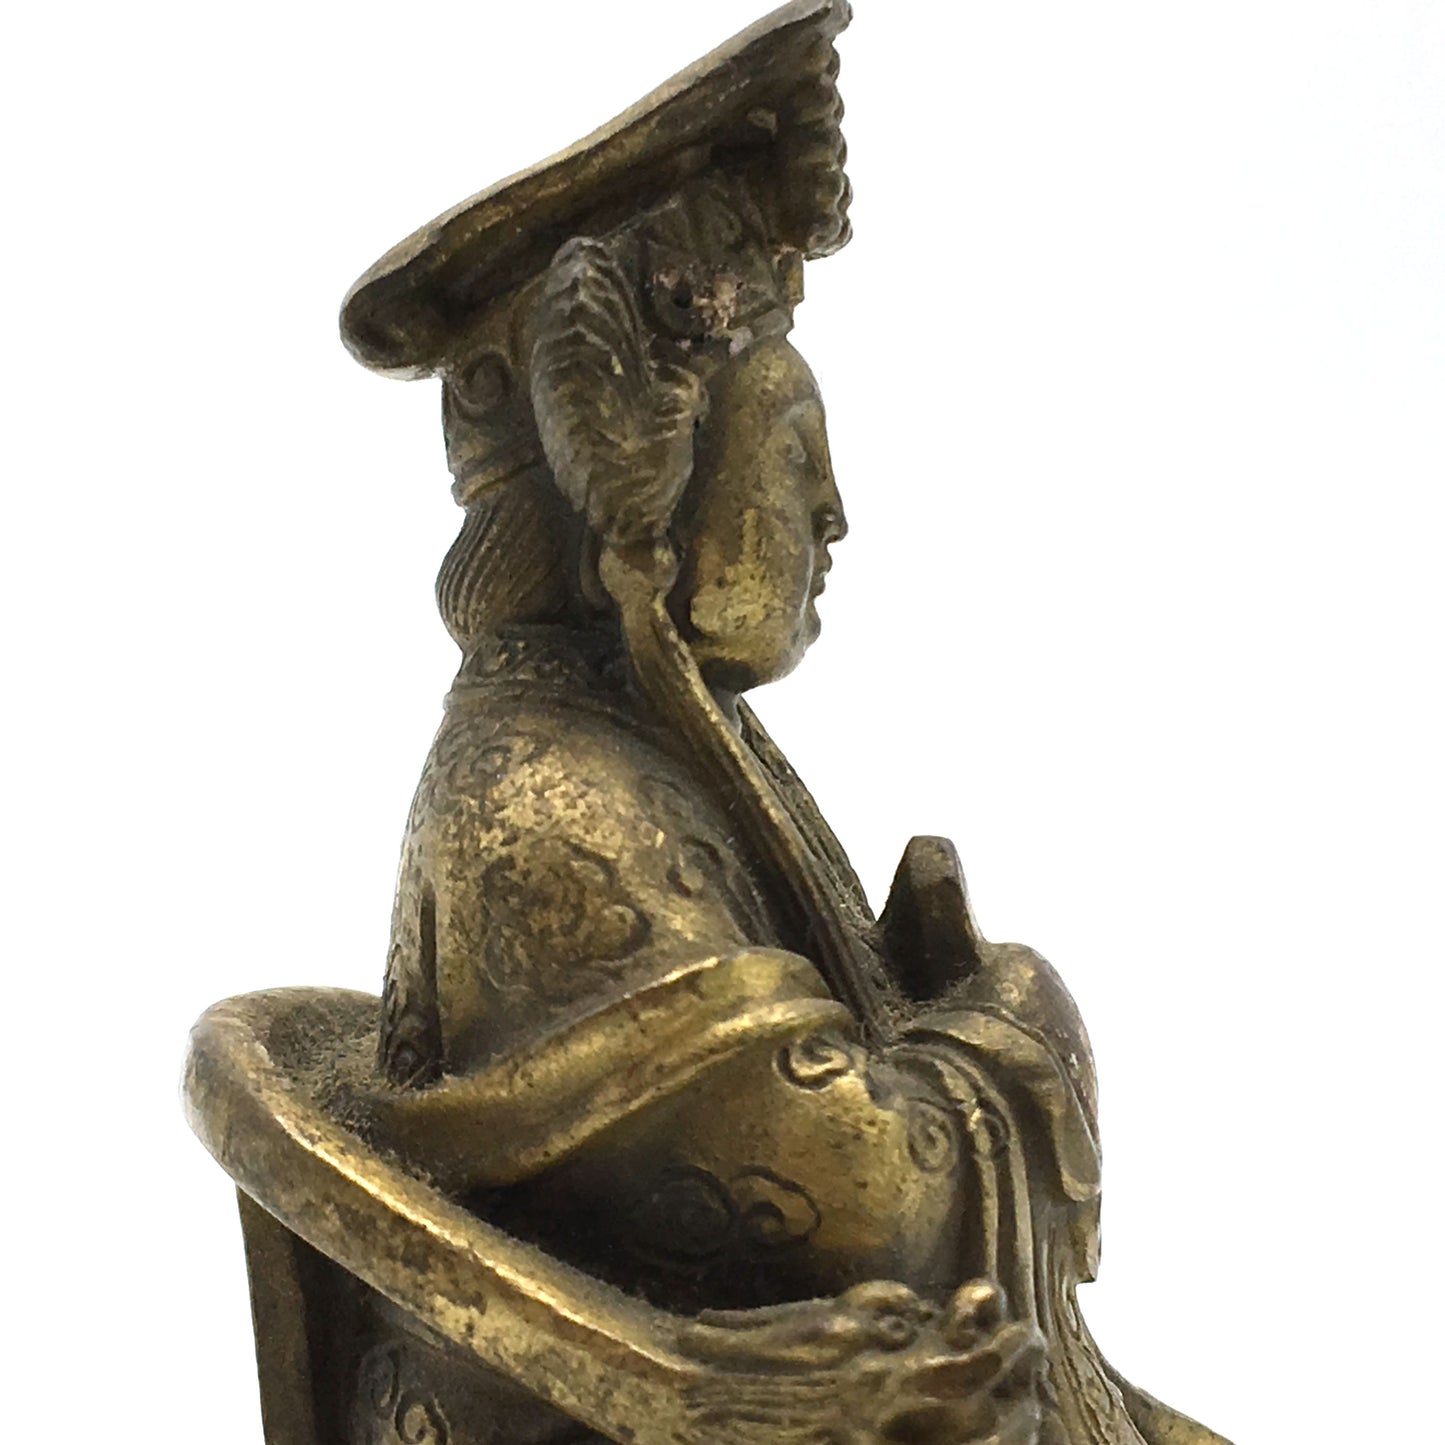 Vintage Brass Handcrafted China Goddess Statue Idol - Fine Detail - 3.5" - Montecinos Ethnic